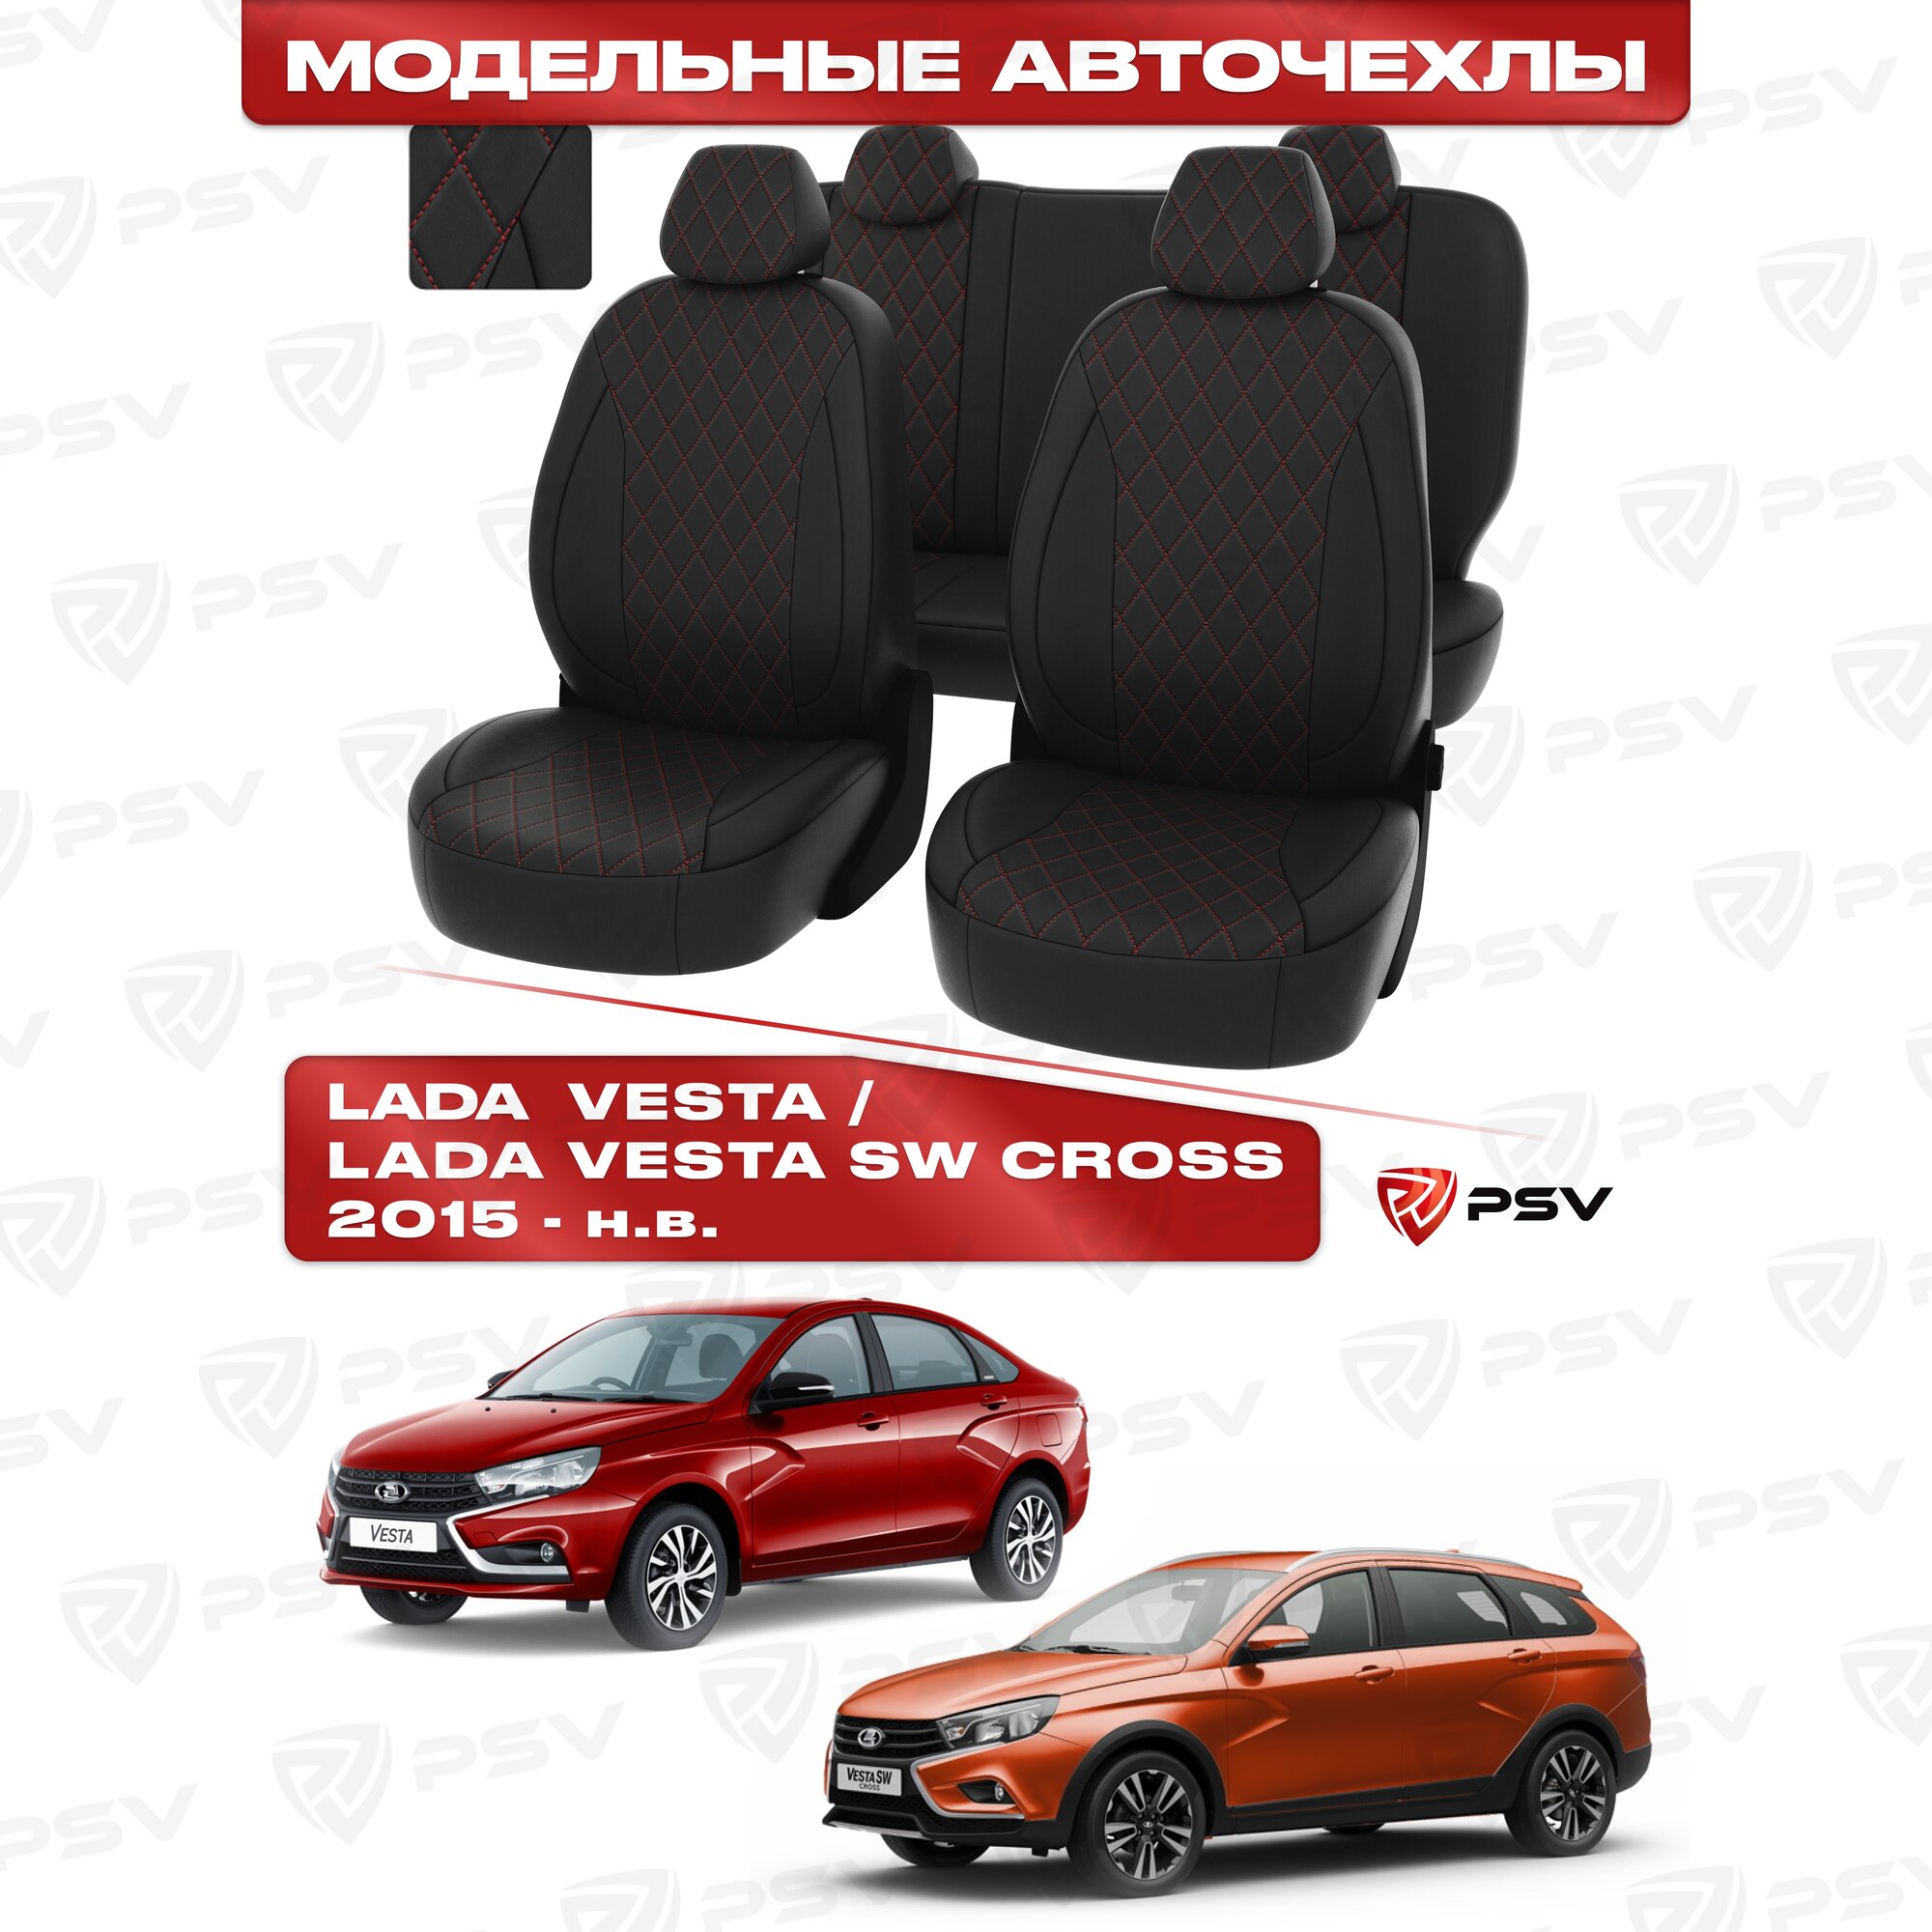 Чехлы в машину PSV для Lada Vesta/Лада Веста/Vesta SW Cross 2015-> ромб/отстрочка красная, черная экокожа "Статус"